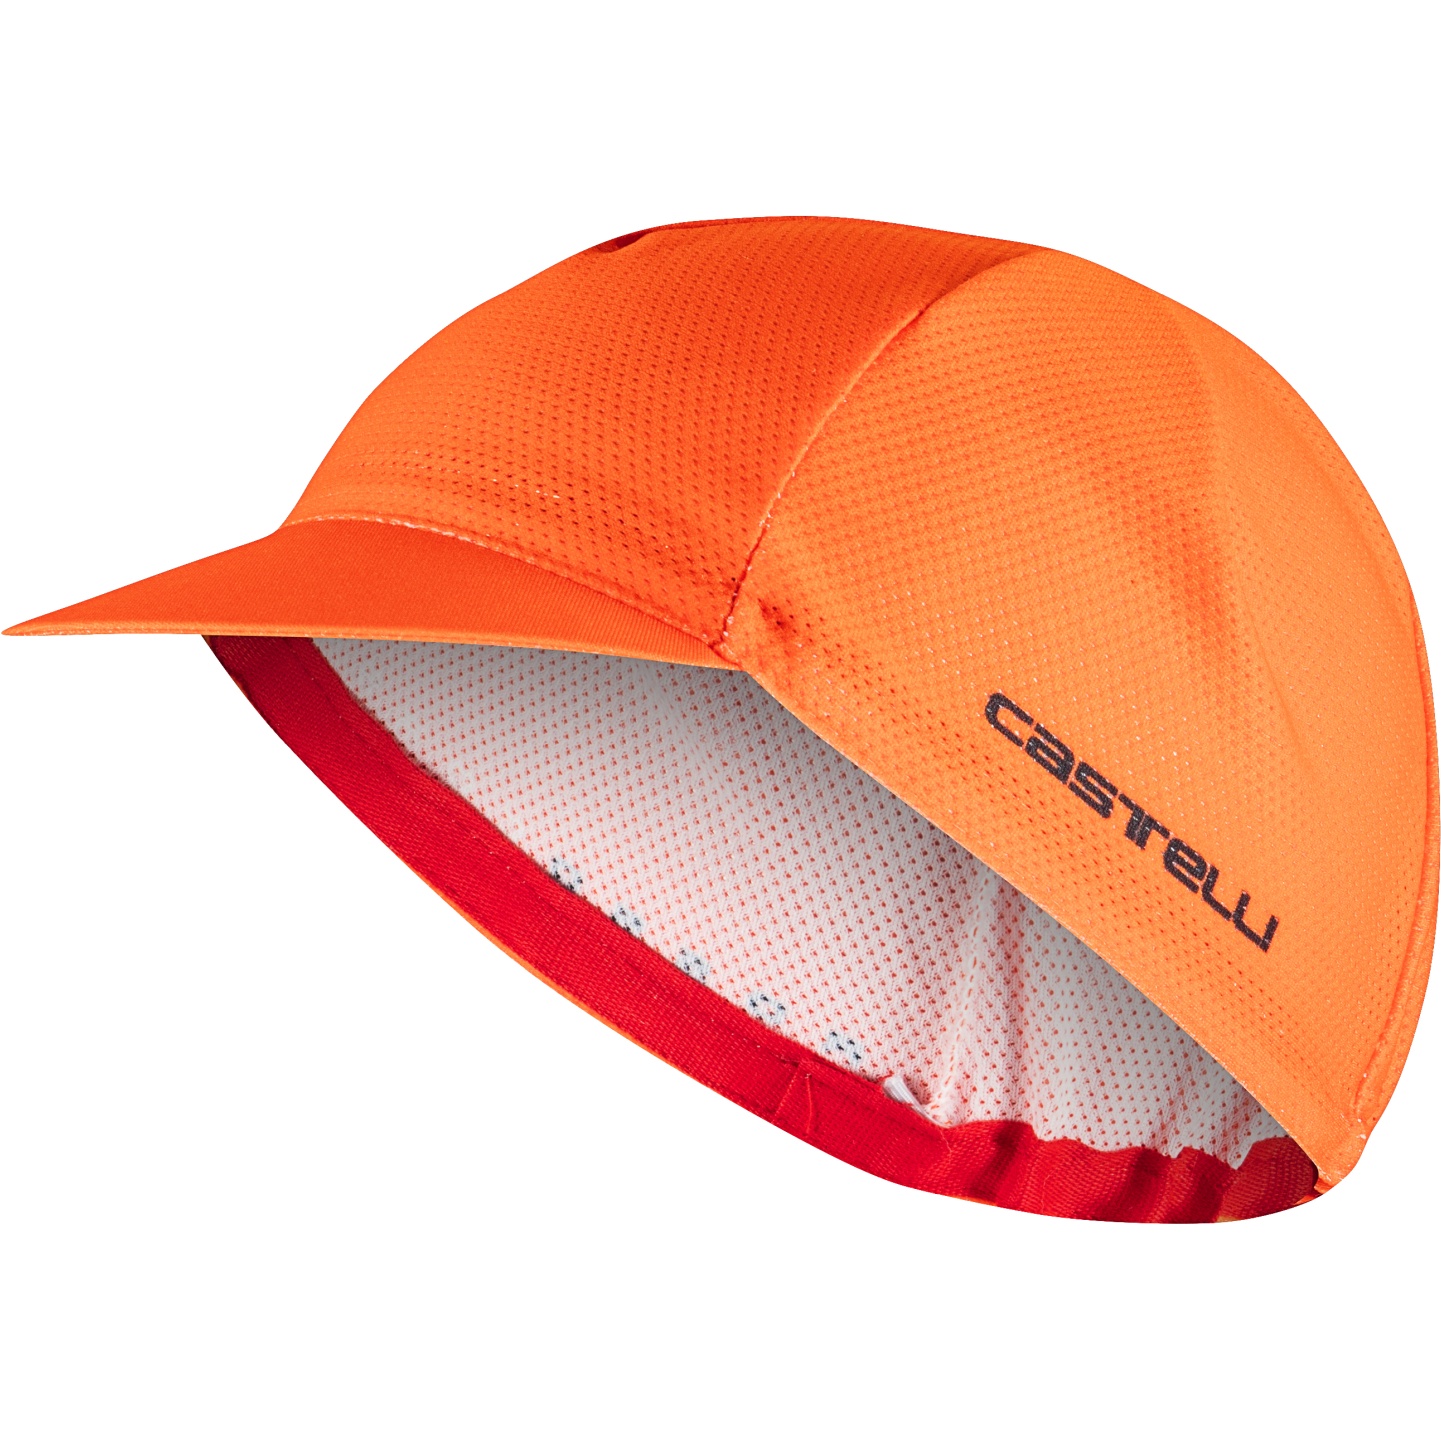 Produktbild von Castelli Rosso Corsa 2 Radmütze - brilliant orange 034